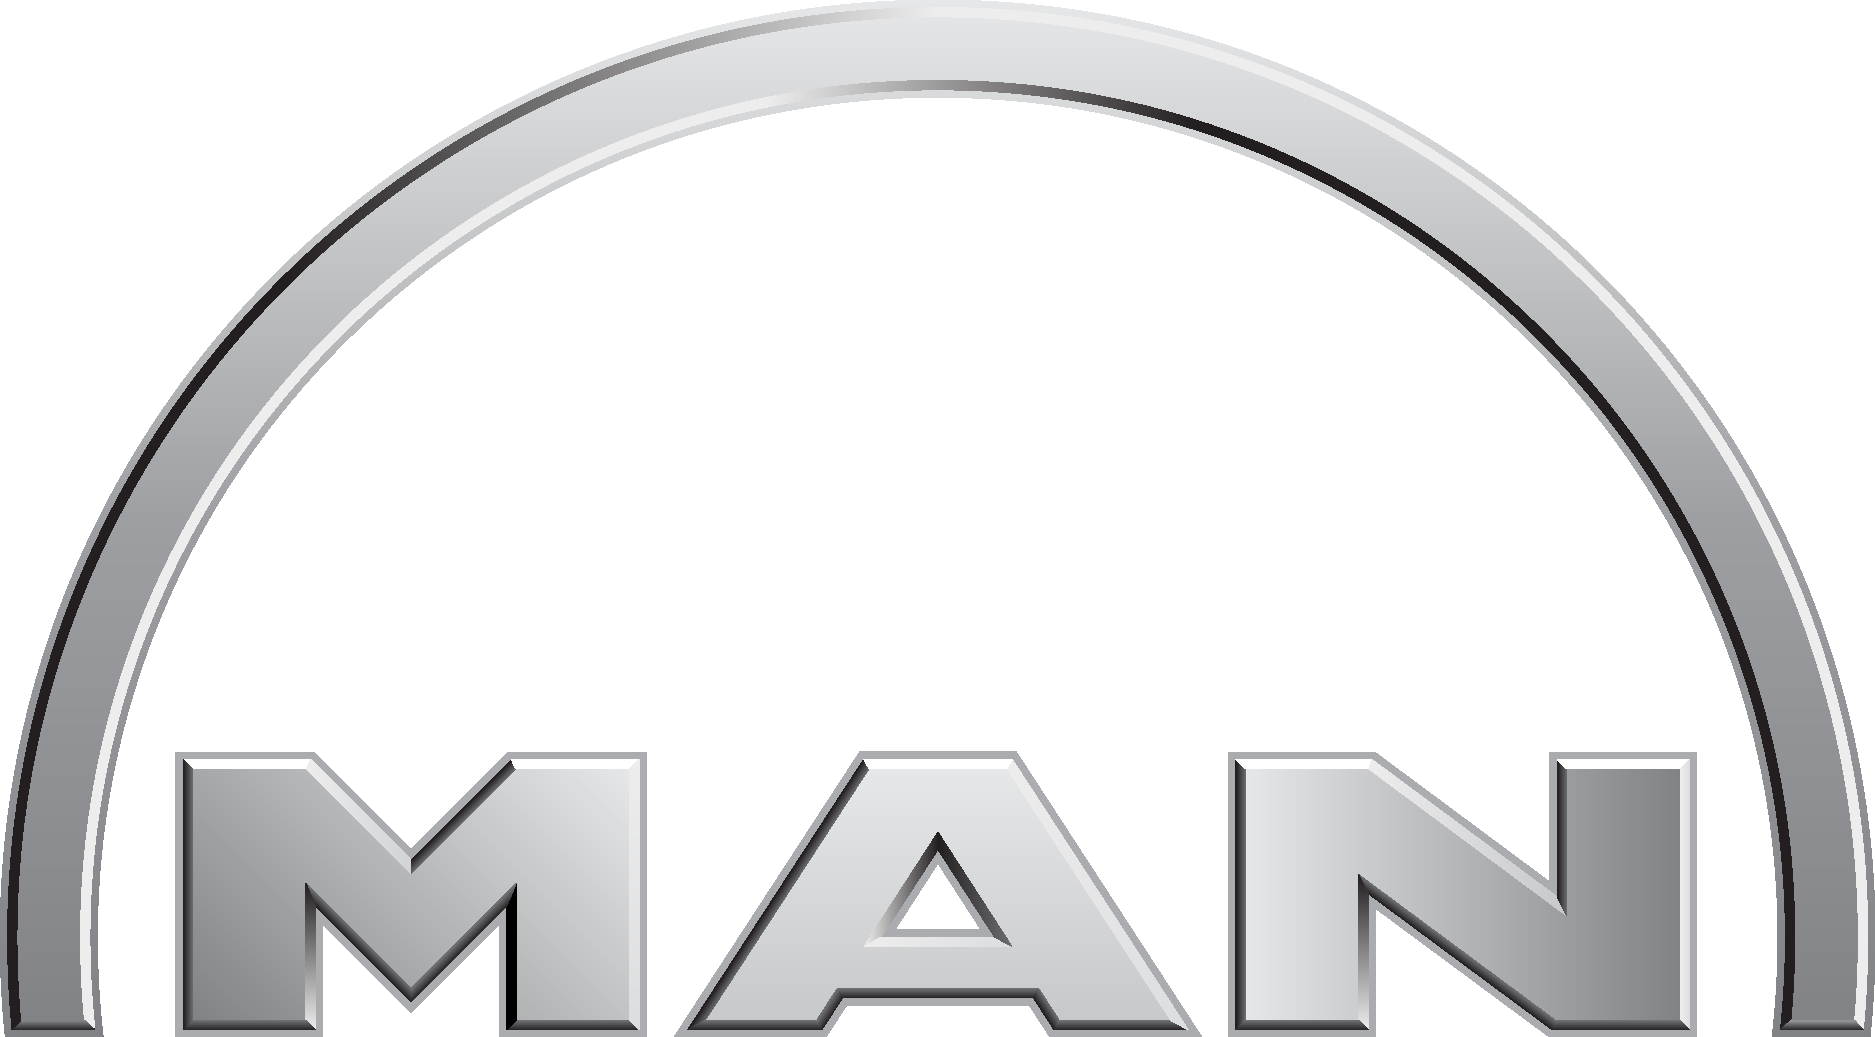 Download Mannesmann Logo in SVG Vector or PNG File Format 